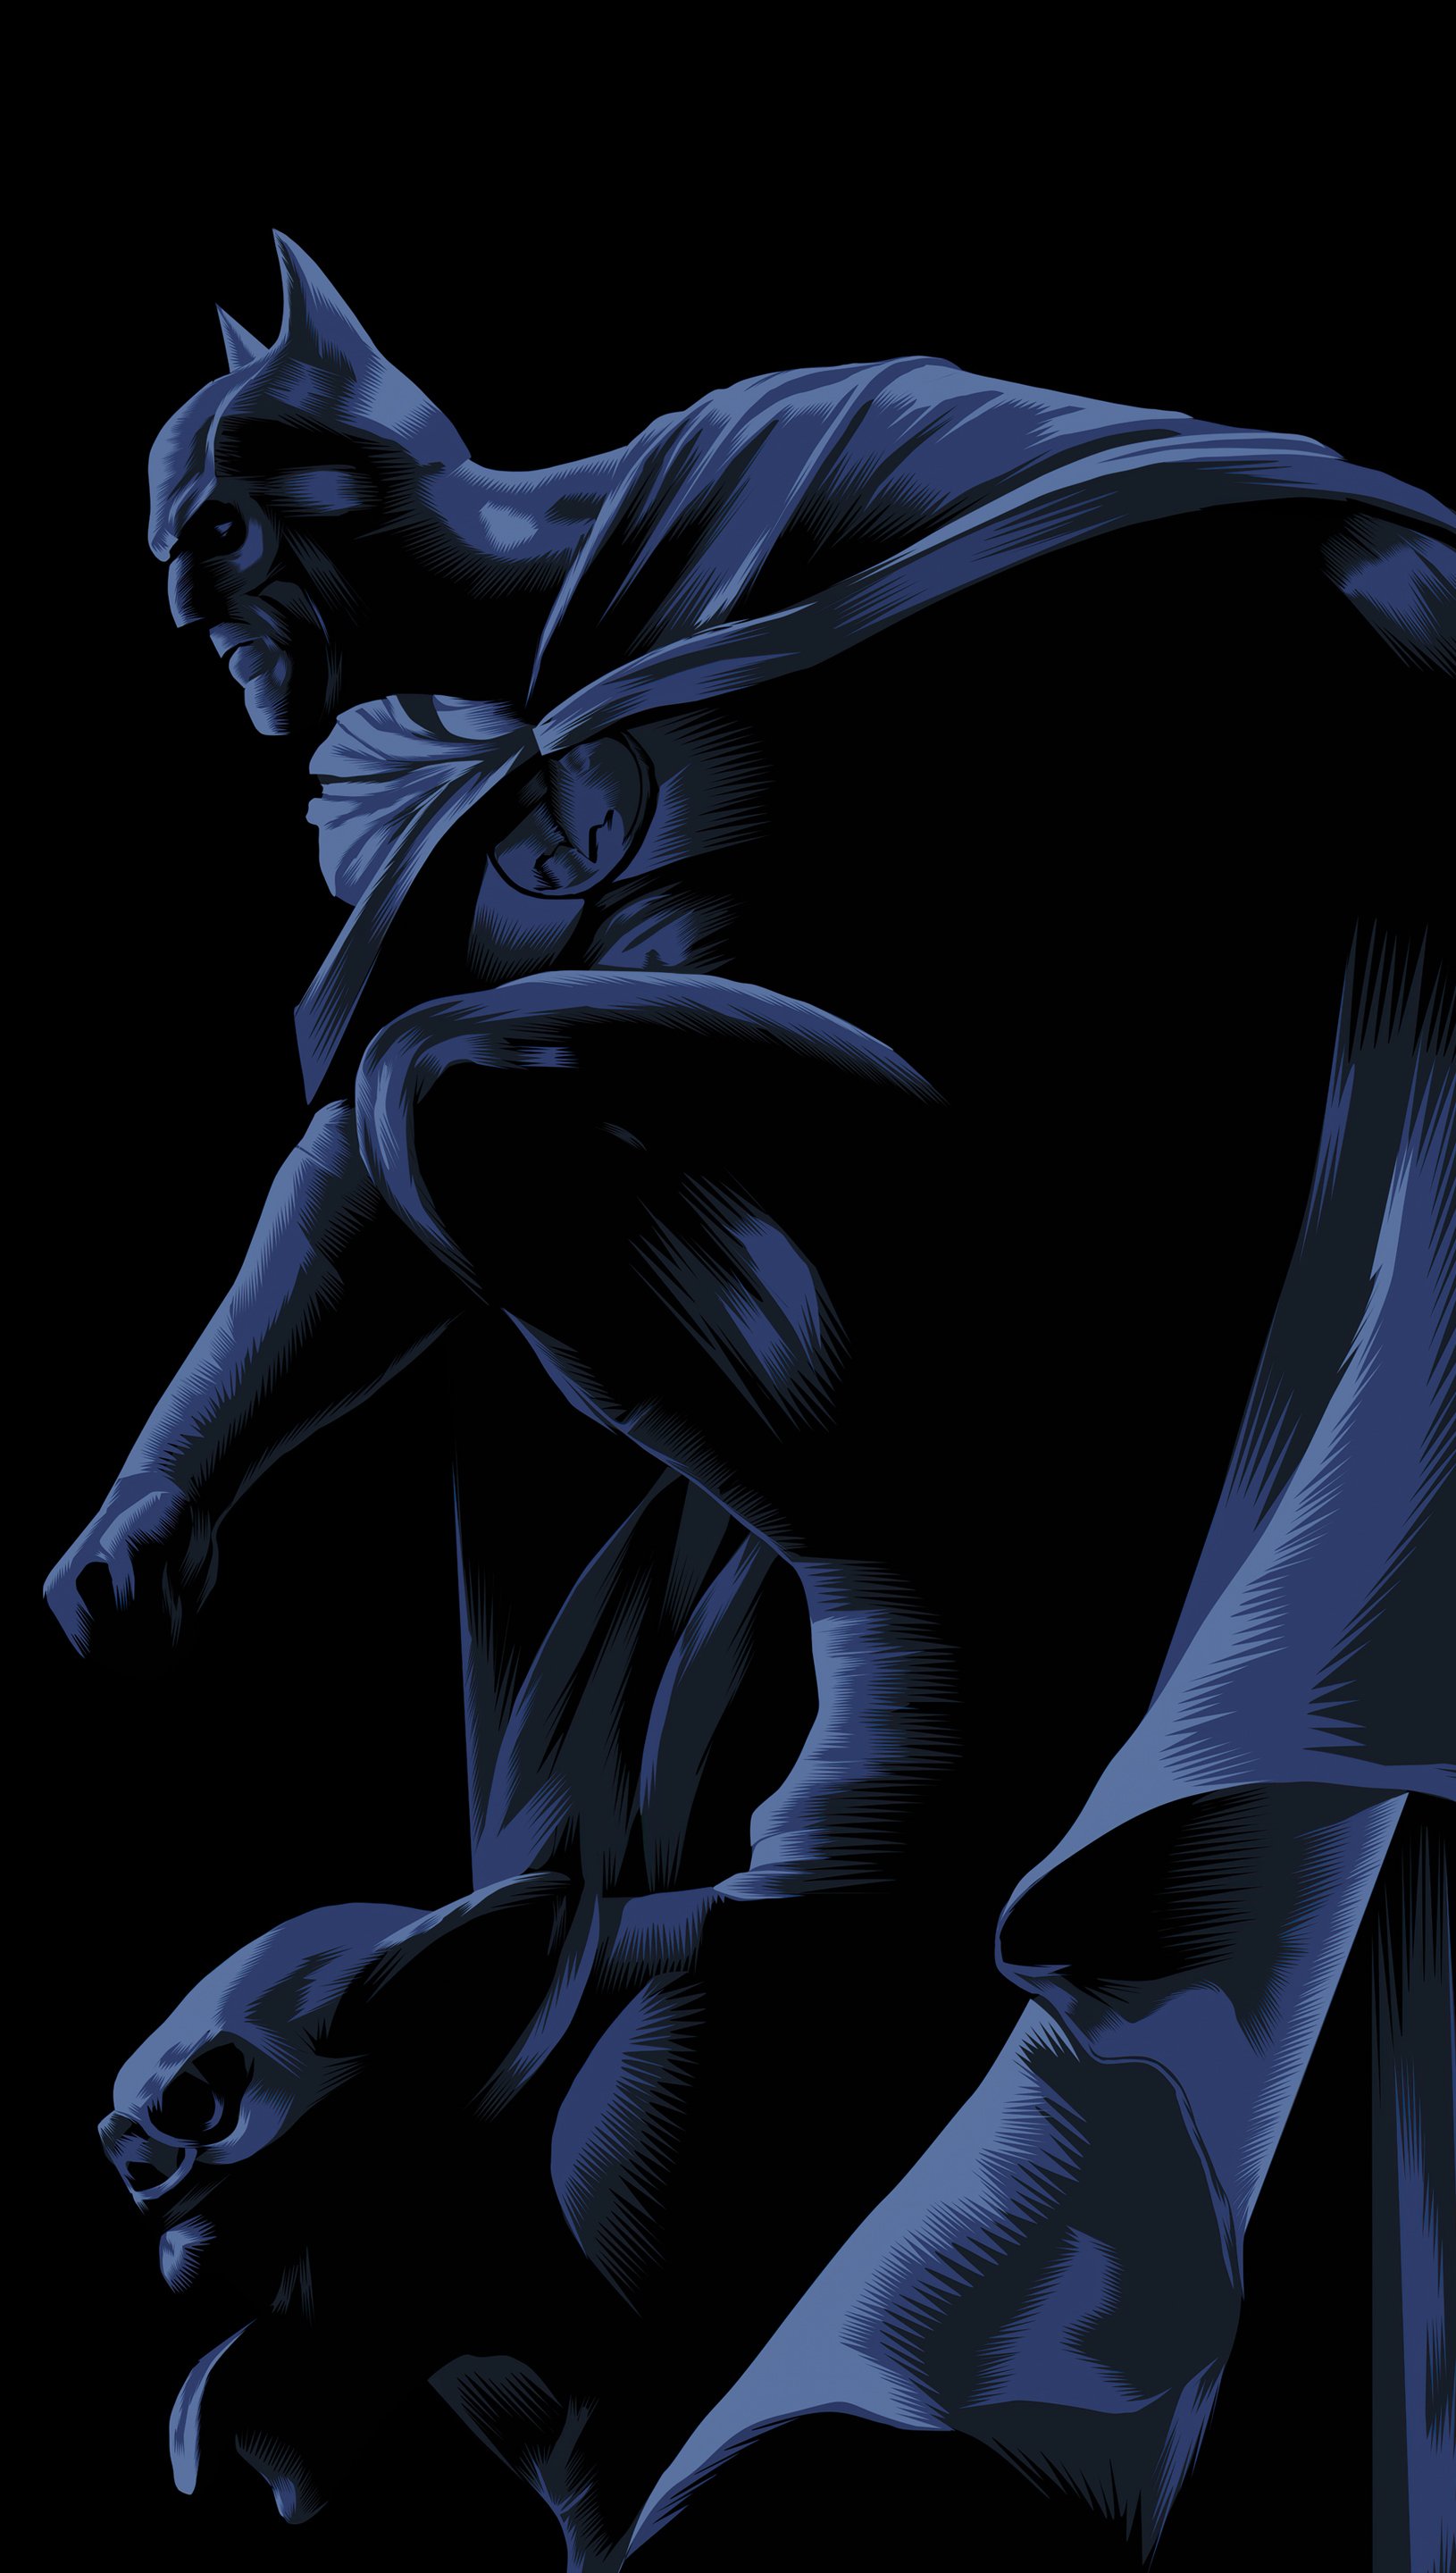 batman wallpaper hd dark knight